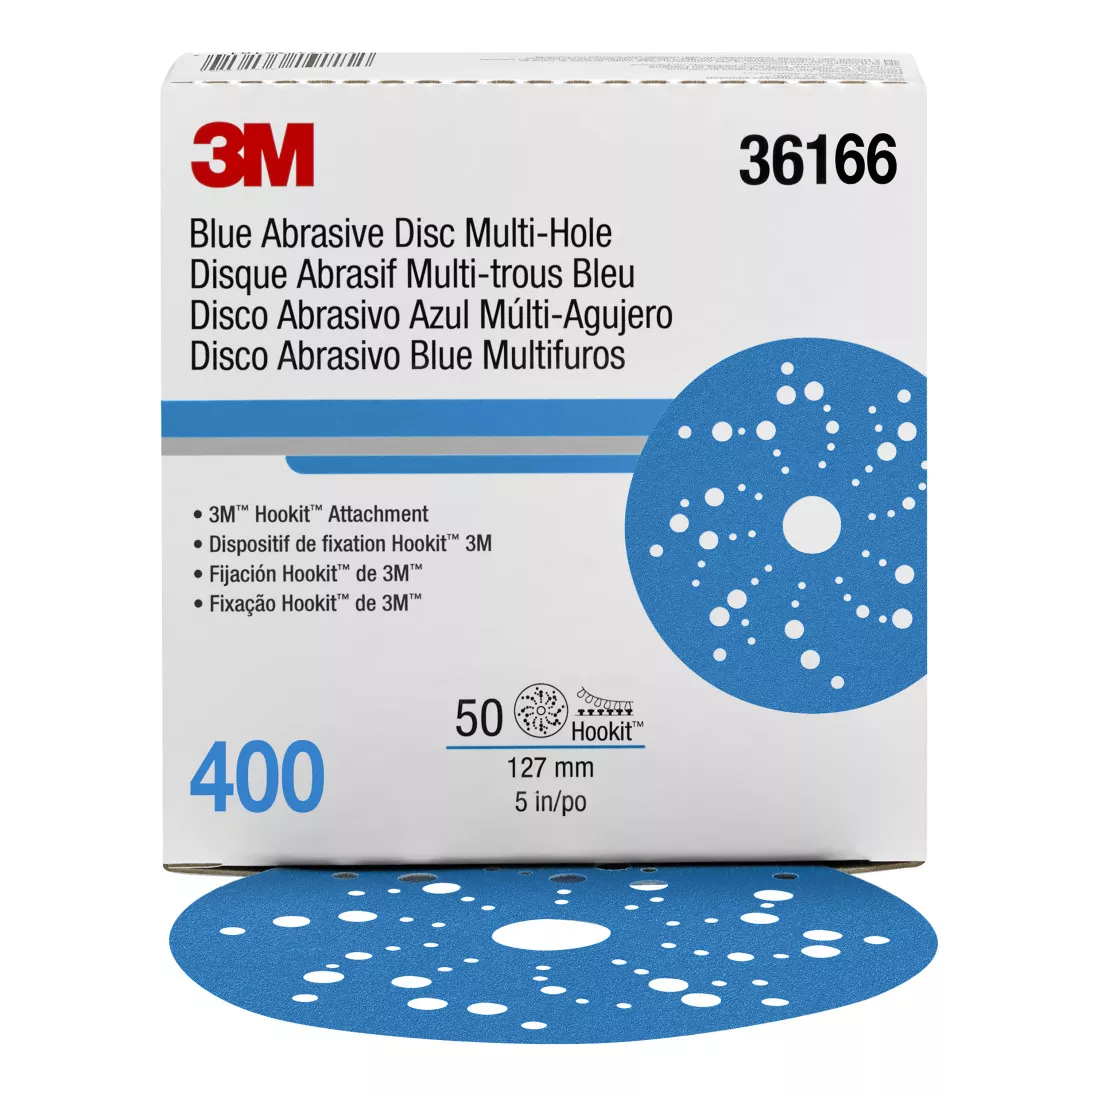 3M™ Hookit™ Blue Abrasive Disc Multi-hole, 36166, 5 in, 400 grade, 50
discs per carton, 4 cartons per case